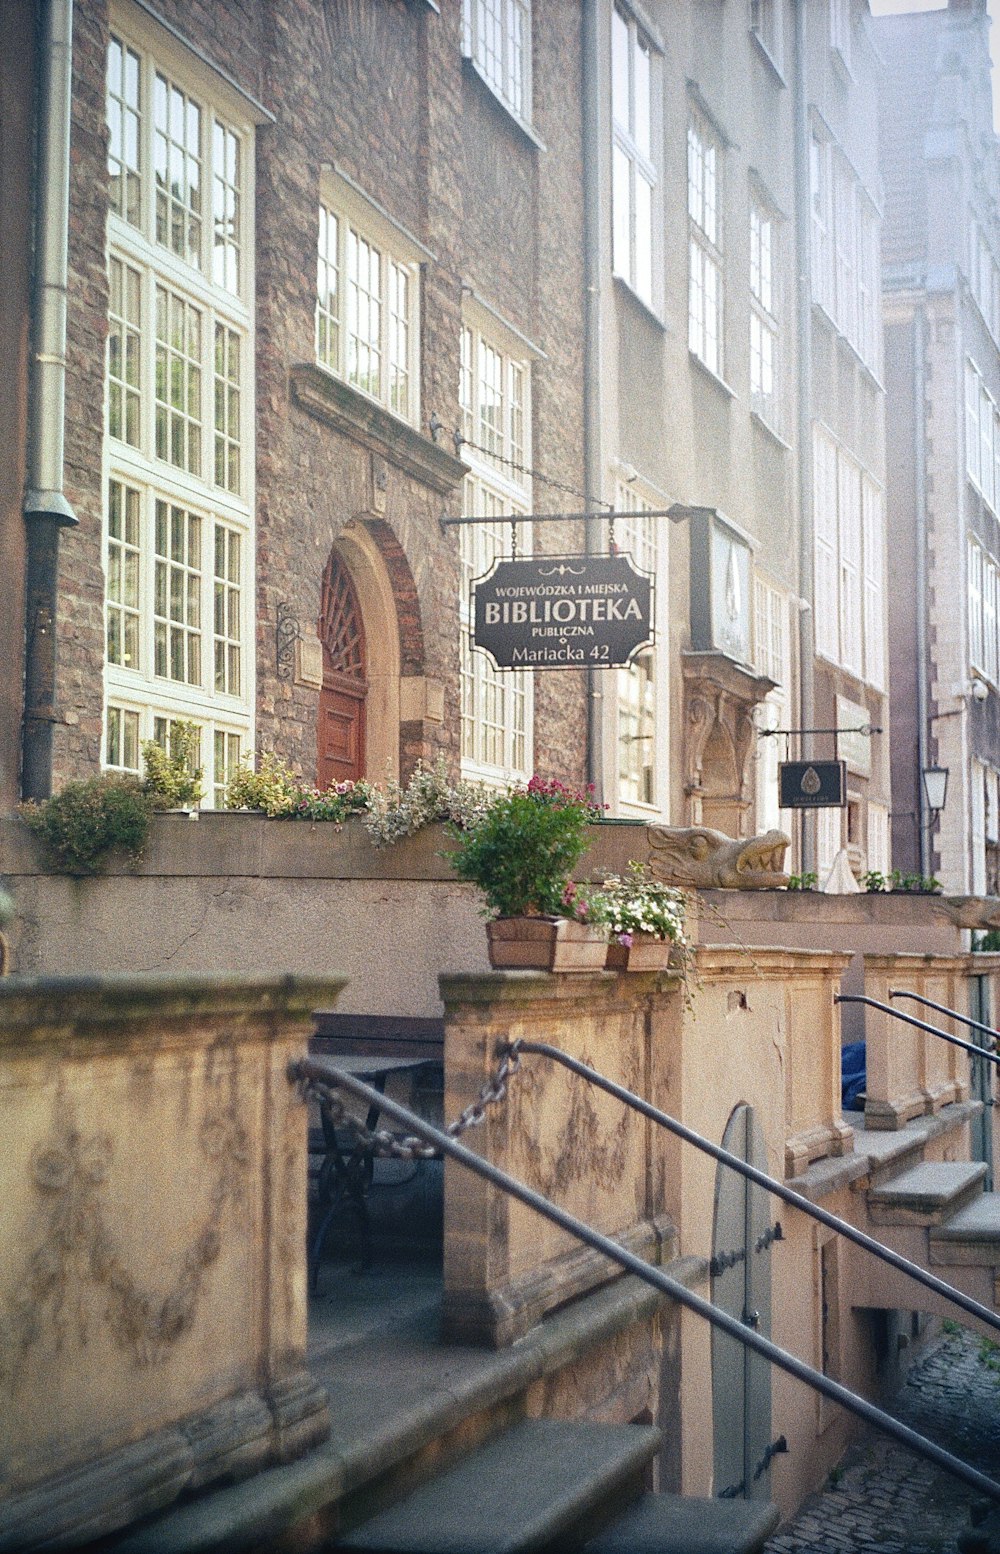 Ein Steingebäude mit einem Schild, auf dem Bluetor steht